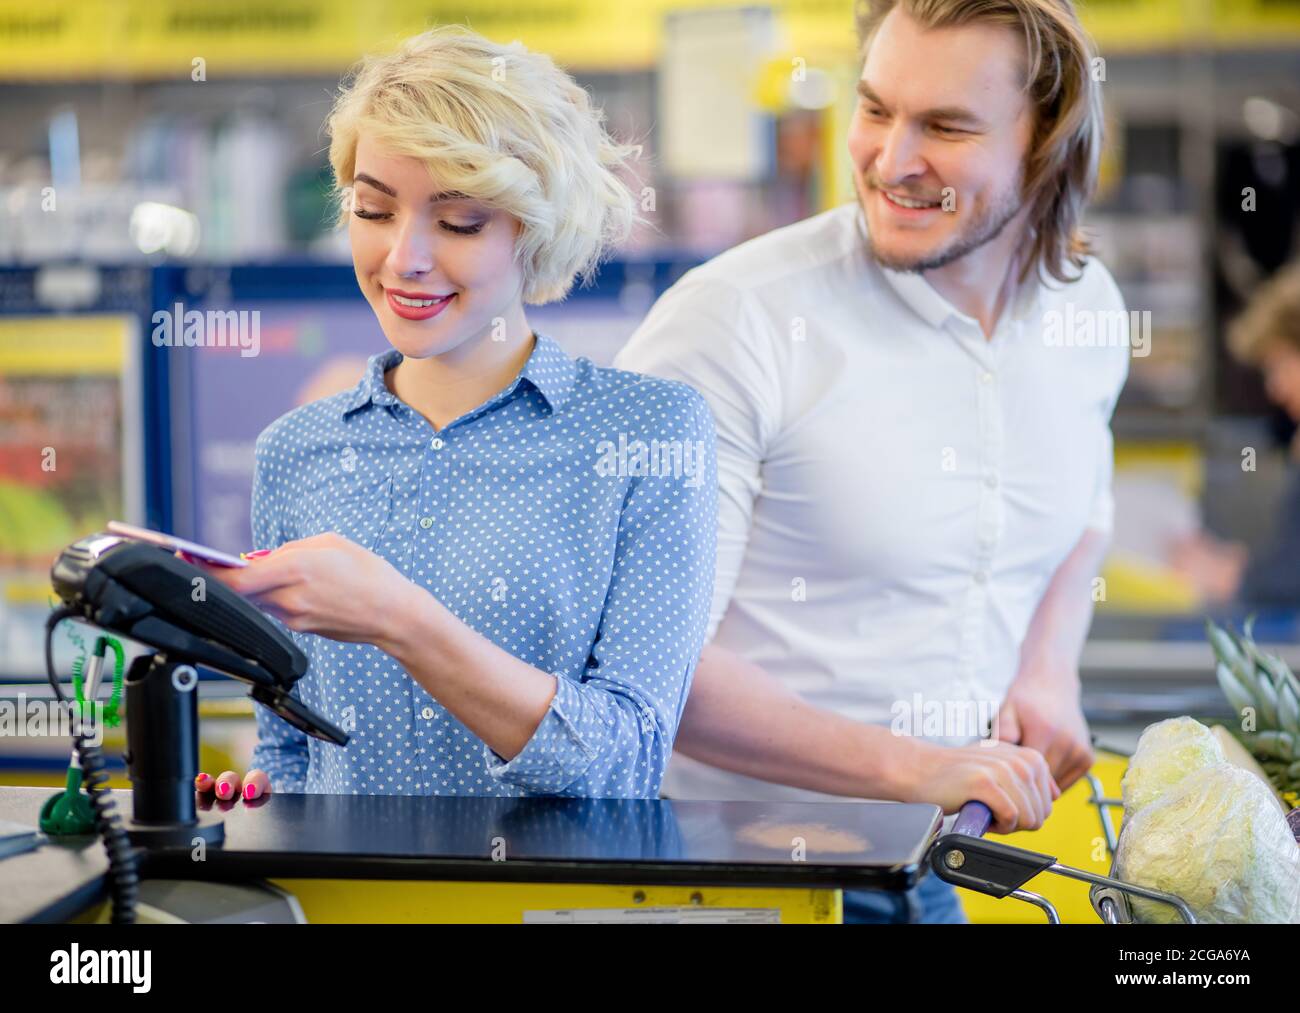 Bionda attraente donna al checkout supermercato, sta pagando usando una carta di credito, shopping e concetto di vendita al dettaglio. Foto Stock